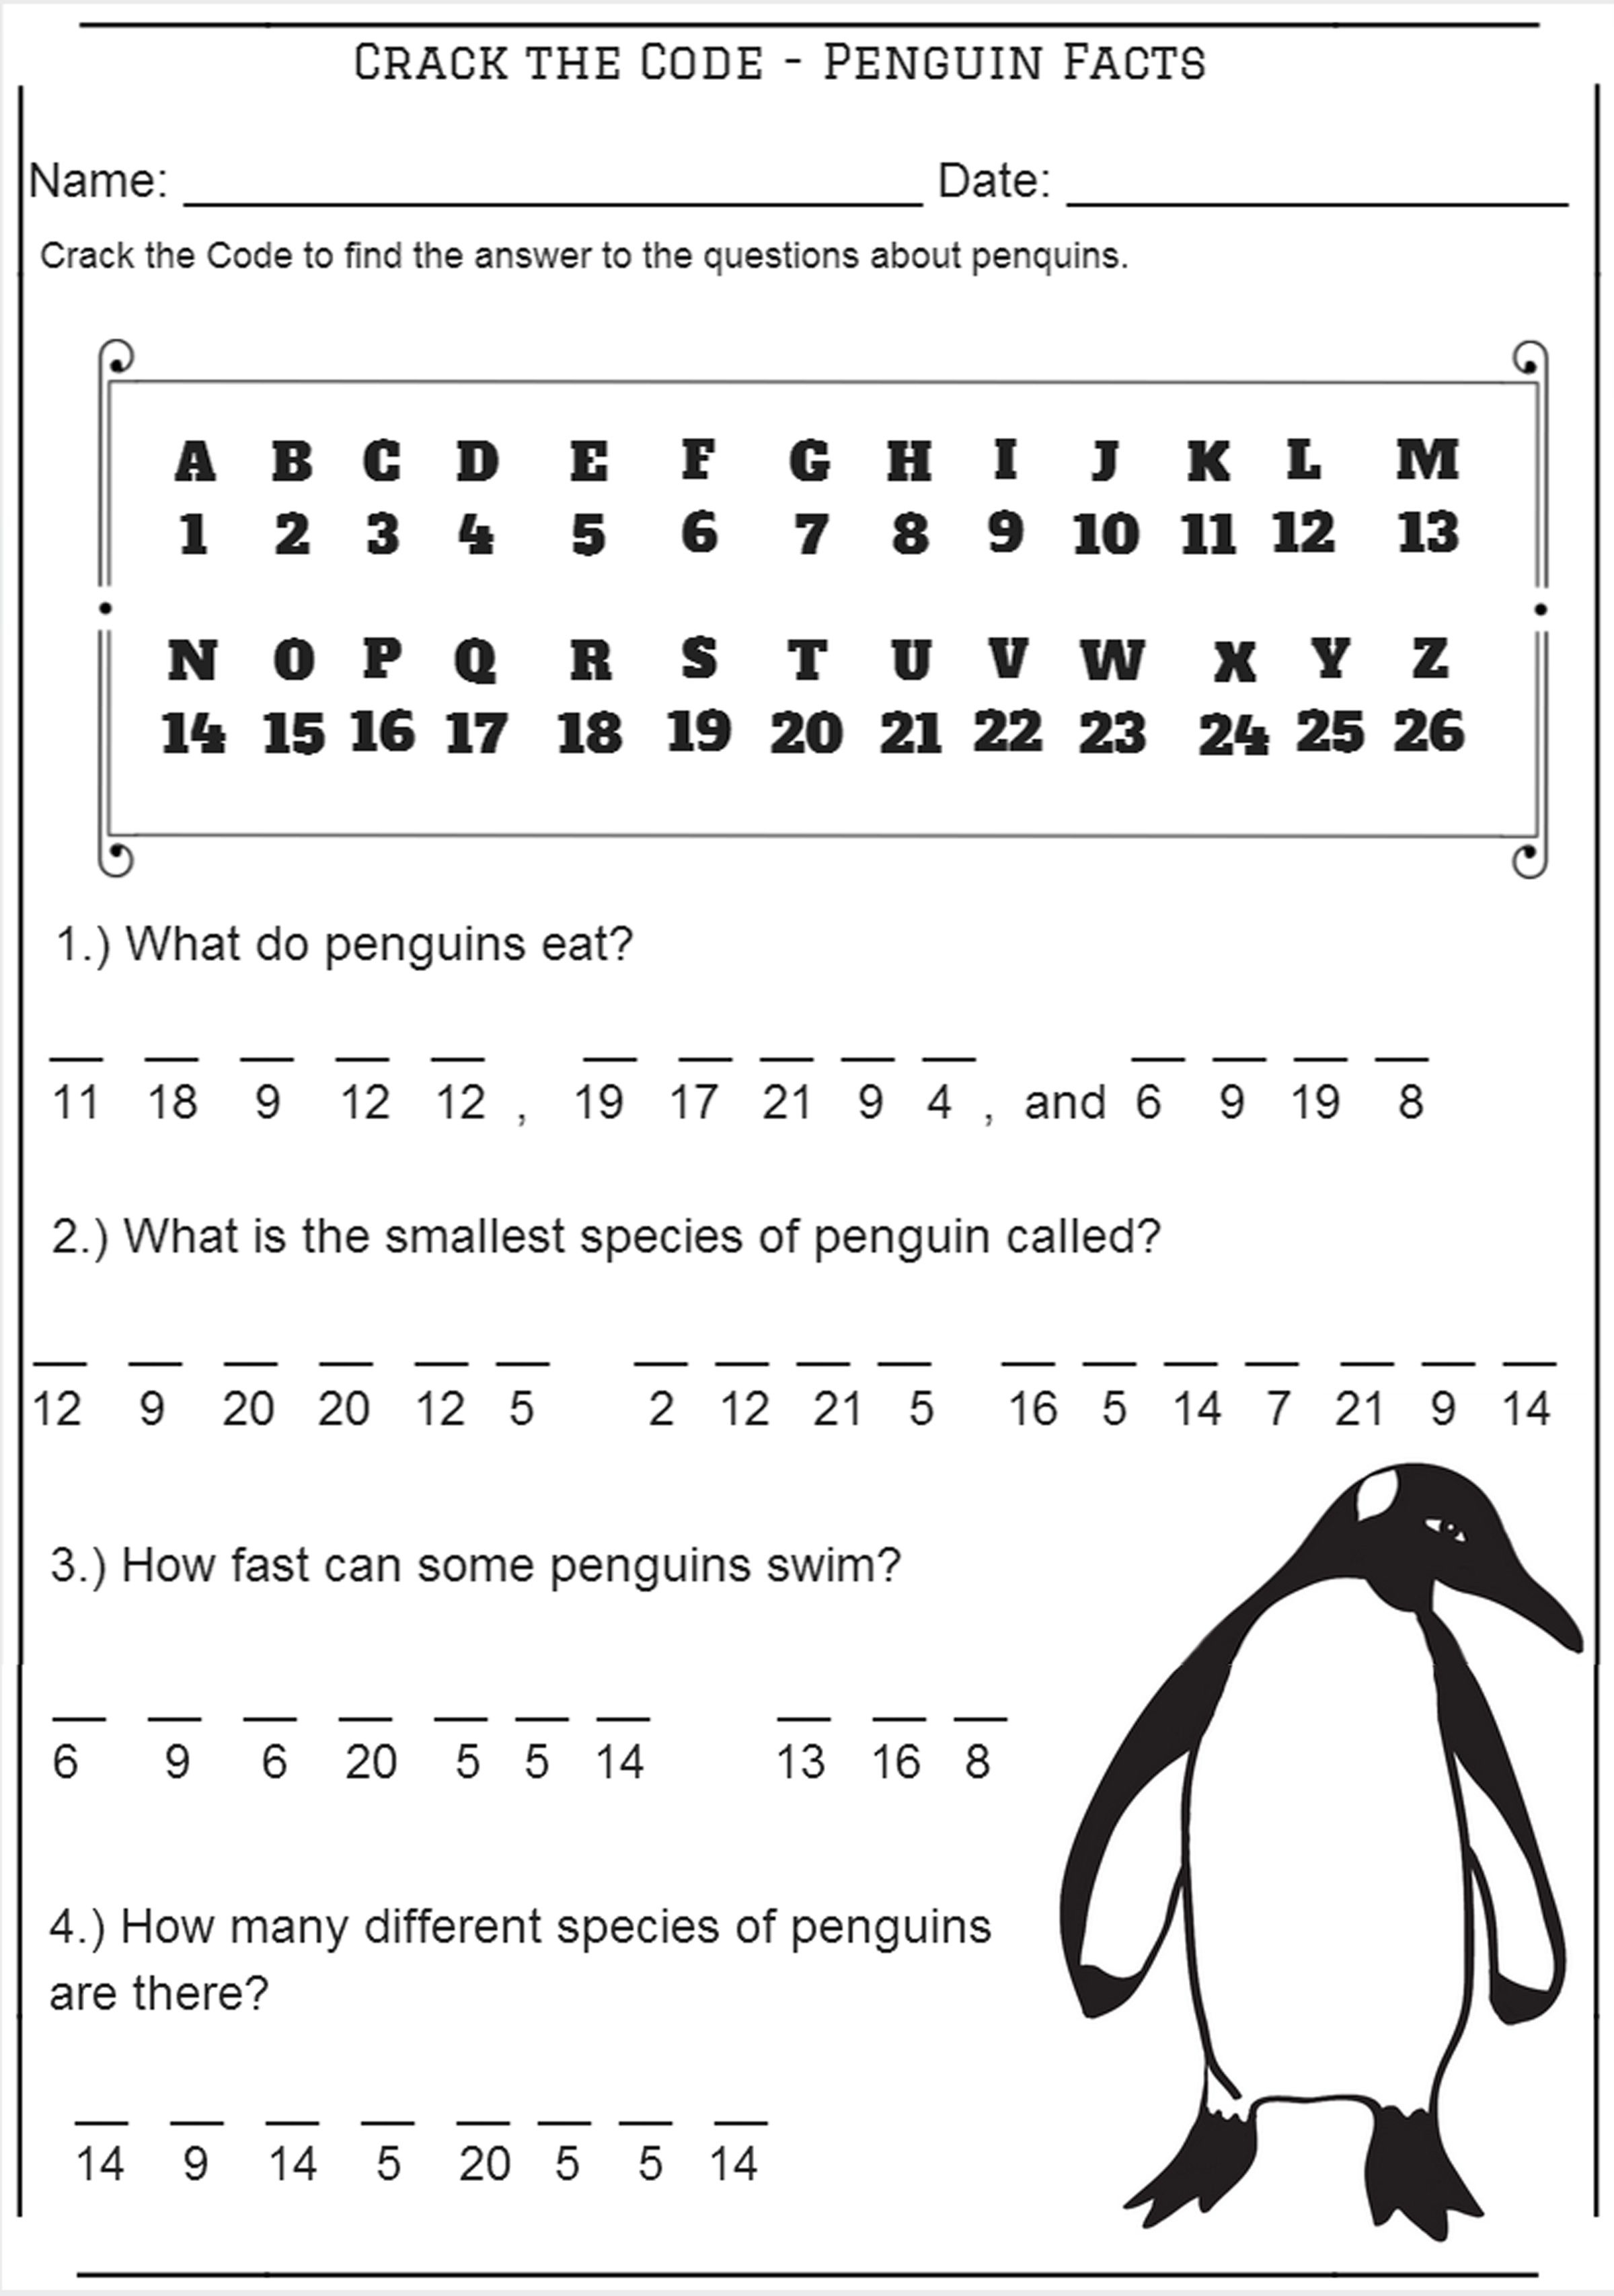 Crack The Code - Penguin Facts - Codebreaker Worksheet - Crack The Code Worksheets Printable Free